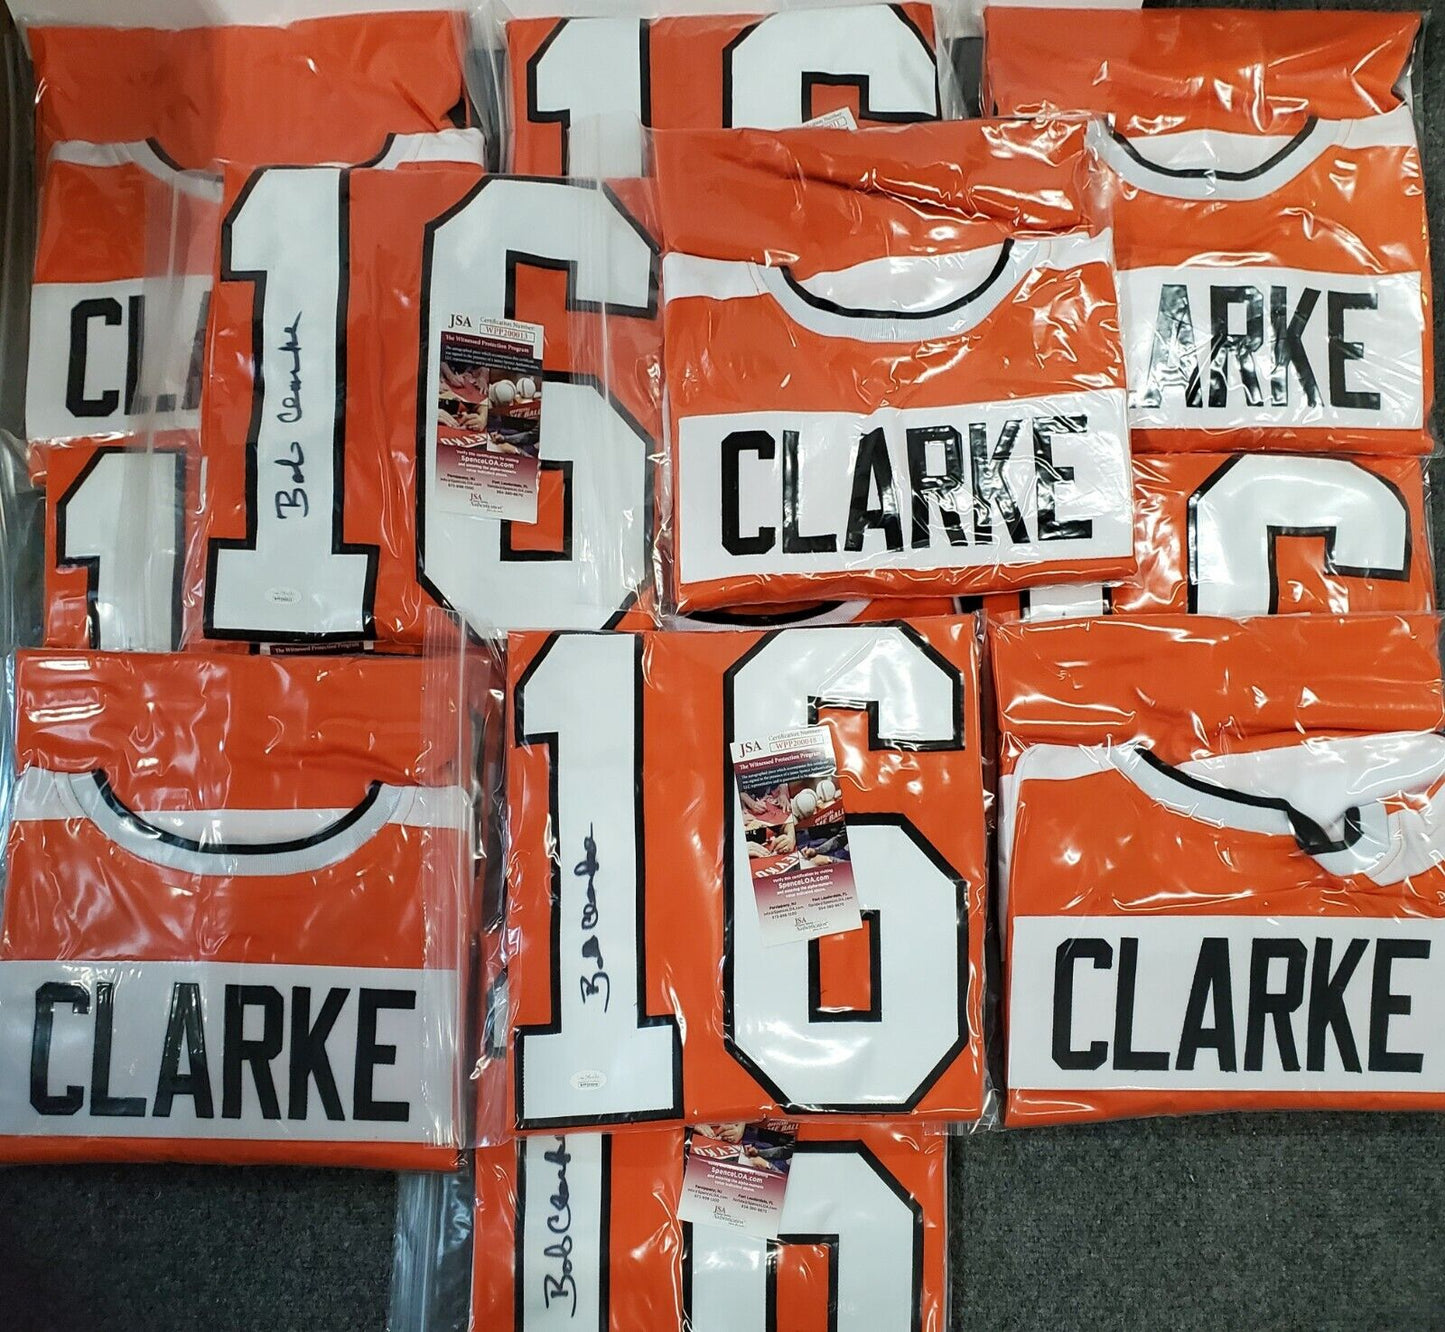 MVP Authentics Philadelphia Flyers Bobby Clarke Autographed Signed Jersey Jsa Coa 134.10 sports jersey framing , jersey framing